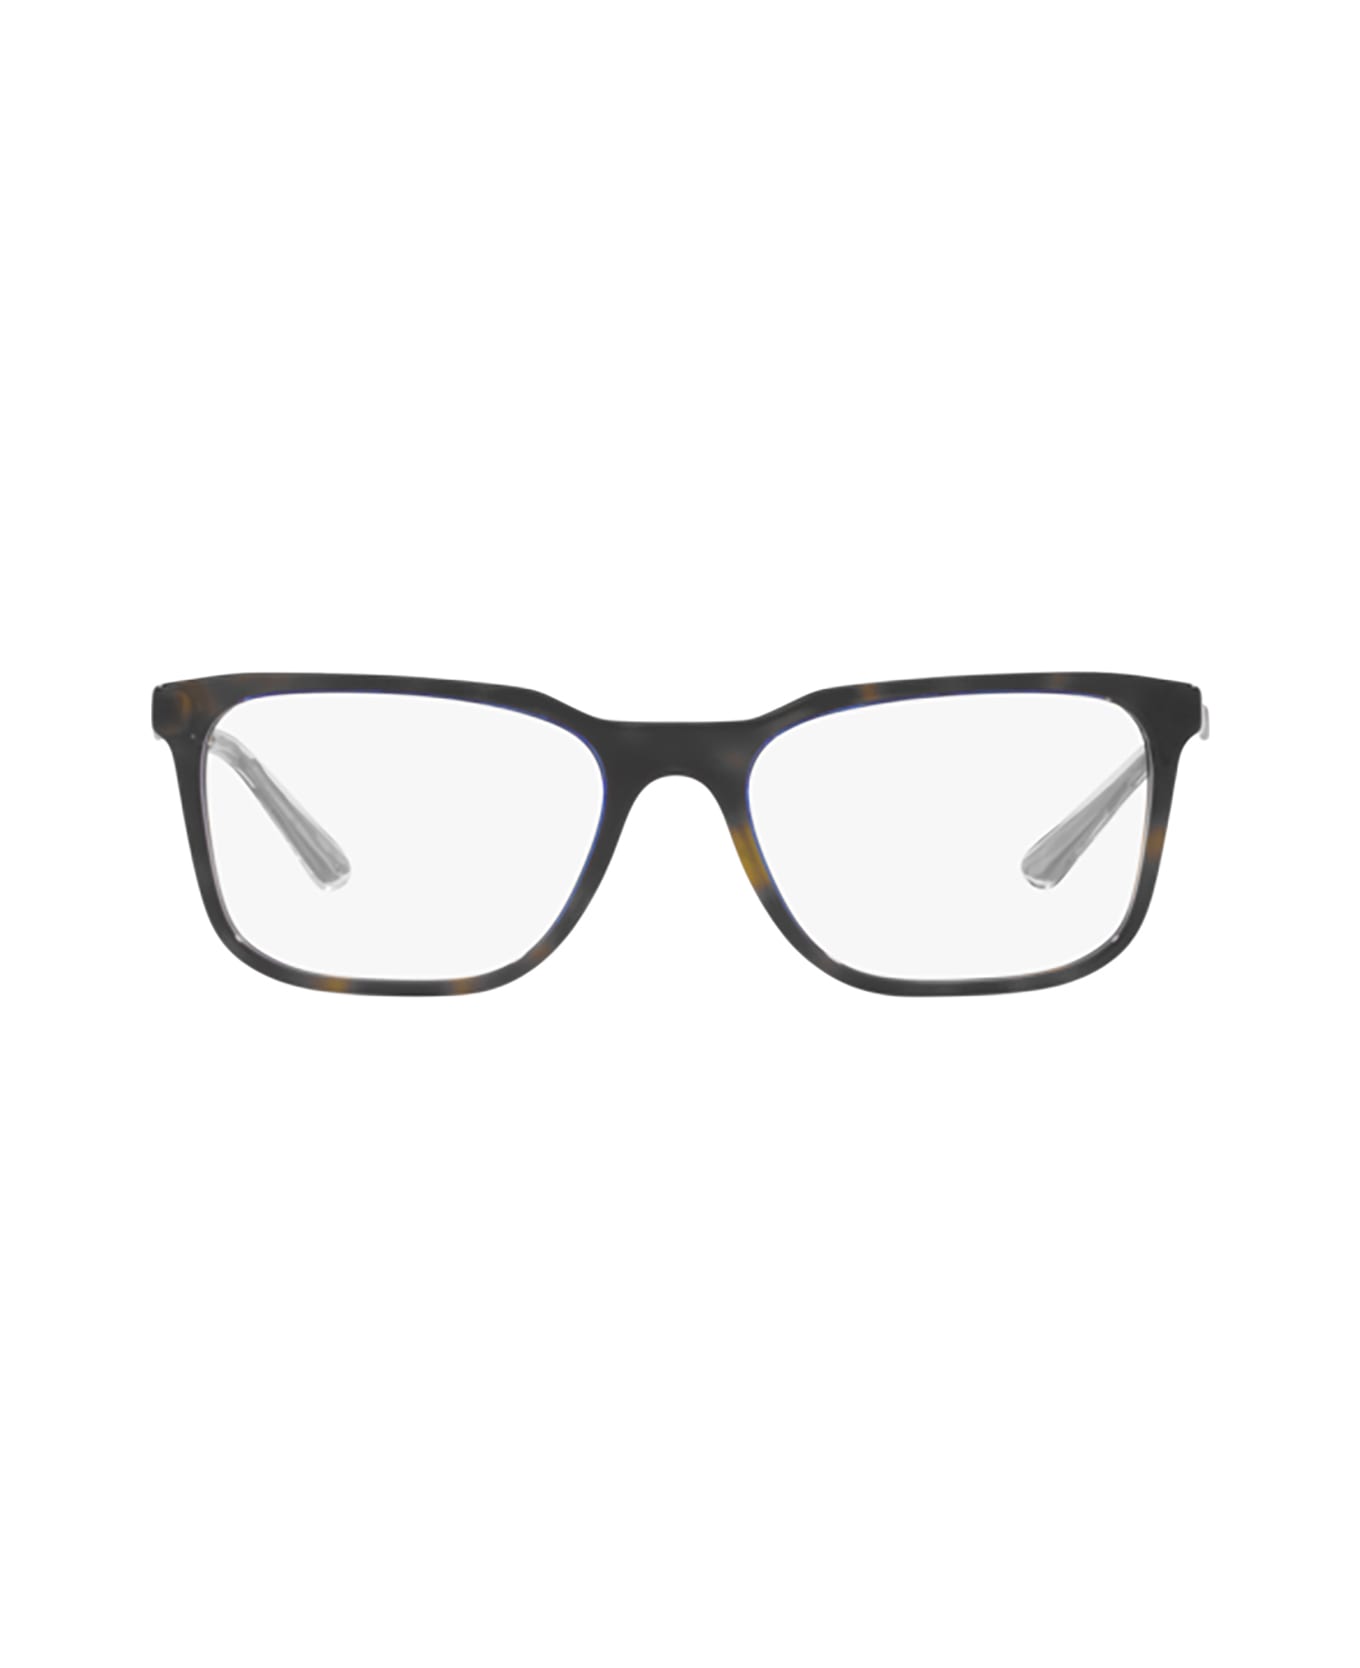 Prada Eyewear Pr 05zv Denim Tortoise Glasses - Denim Tortoise